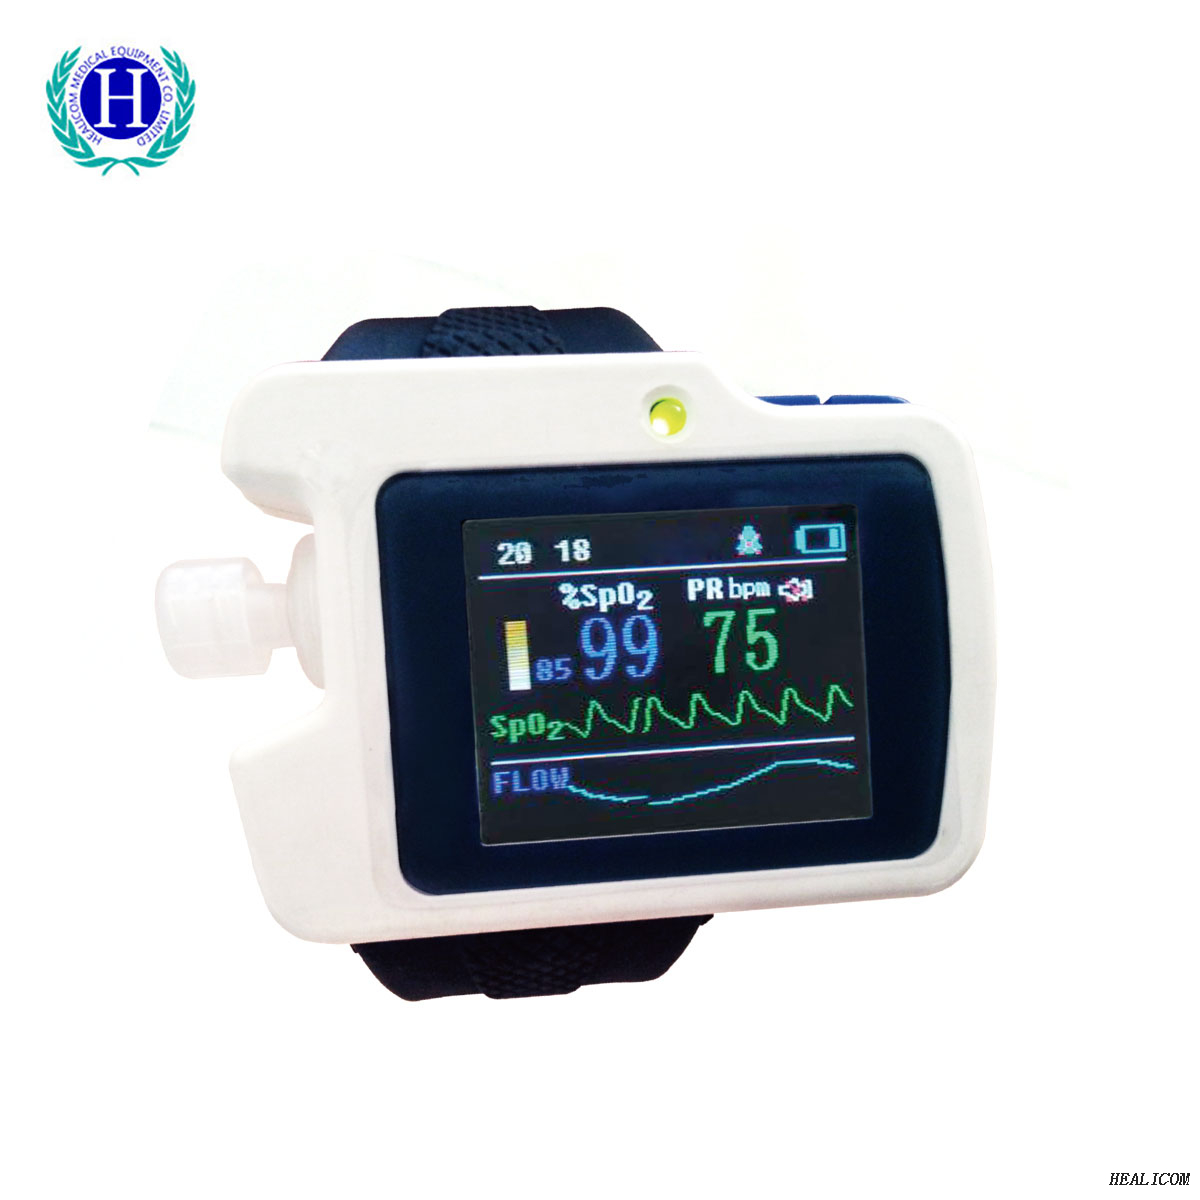 Monitor de paciente RS01 EPOC, medidor de pantalla de apnea del sueño, detector de sueño respiratorio con software para PC